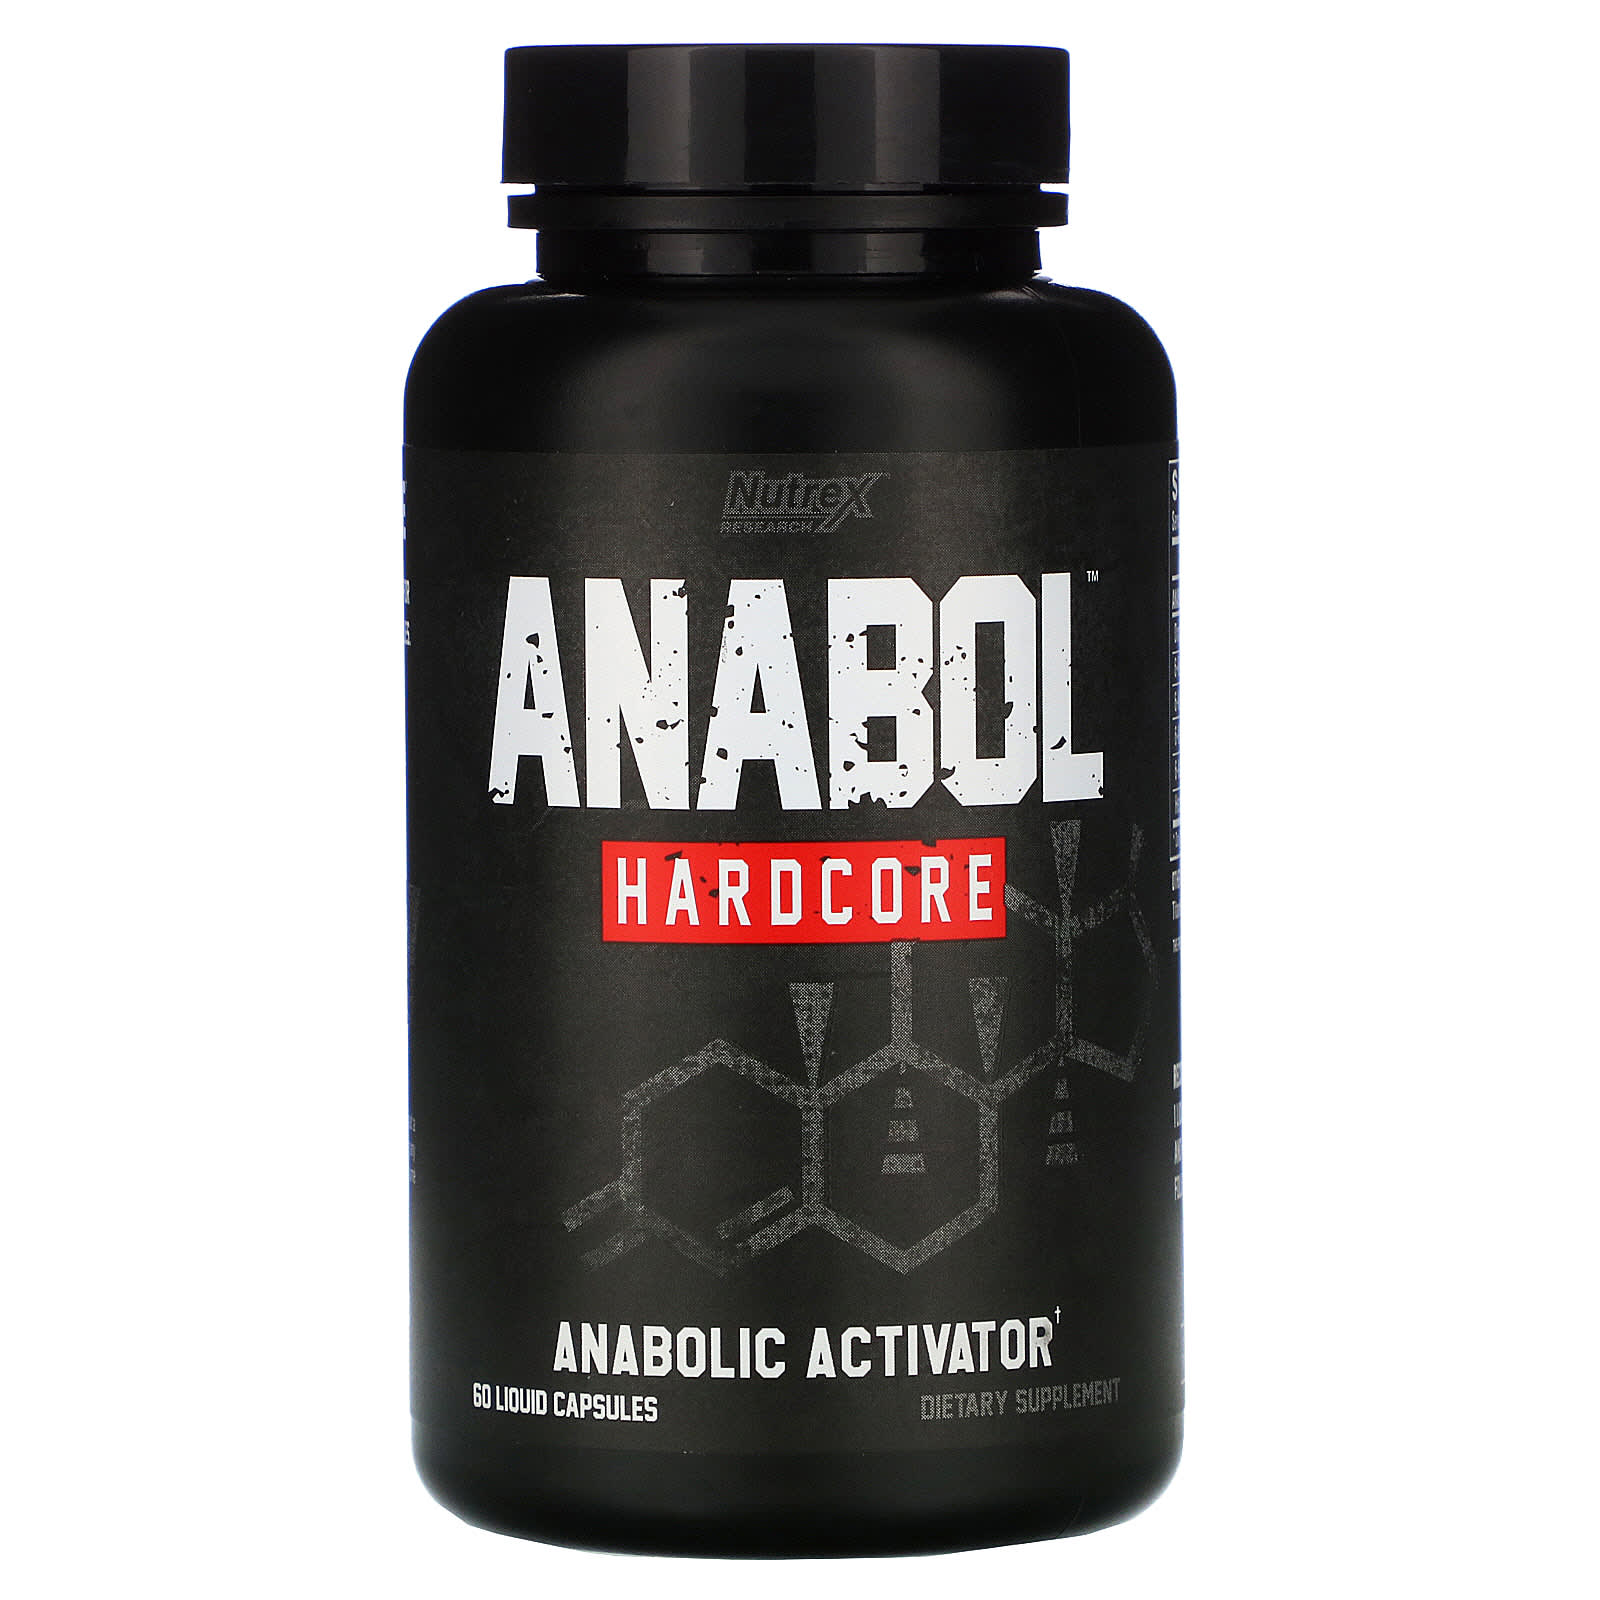 Anabol Hardcore - 60 Liquid Capsules - Nutrex Research